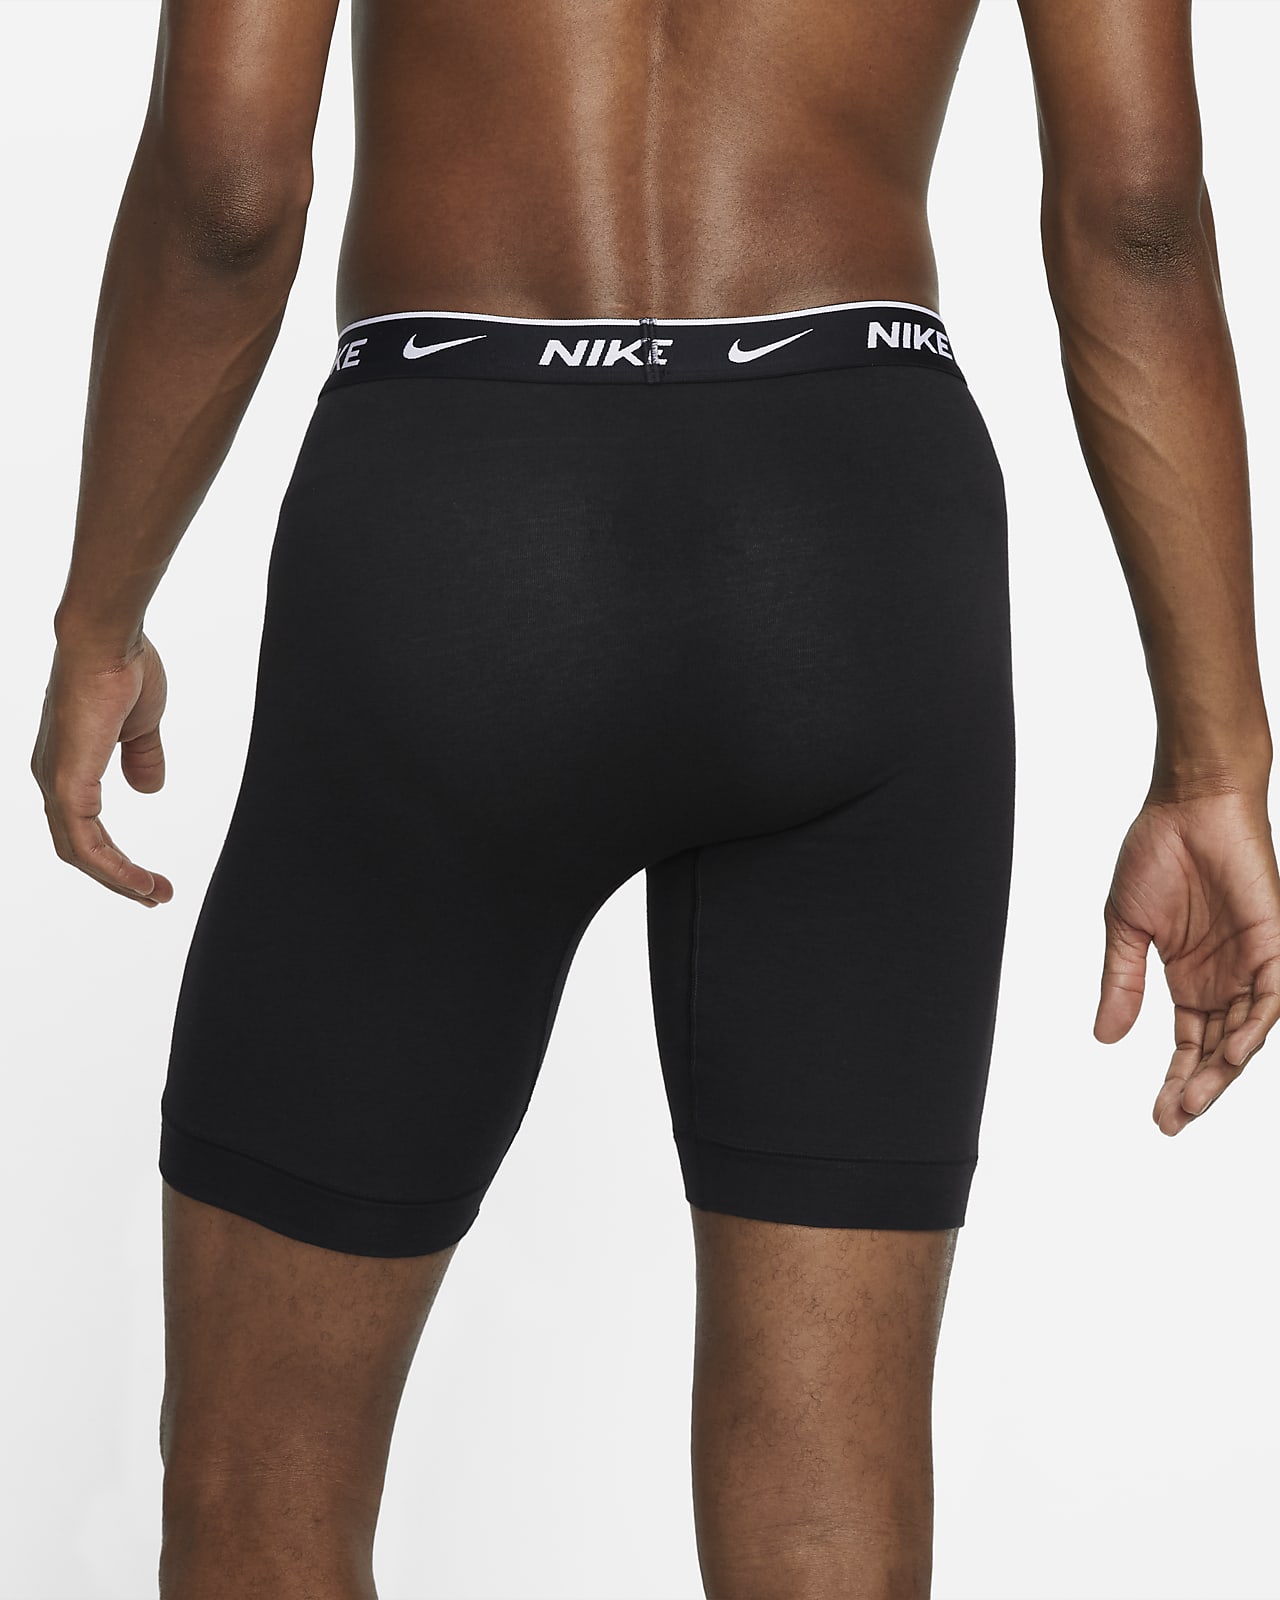 Nike Dri-FIT Essential Cotton Stretch Men's Long Boxer Briefs.